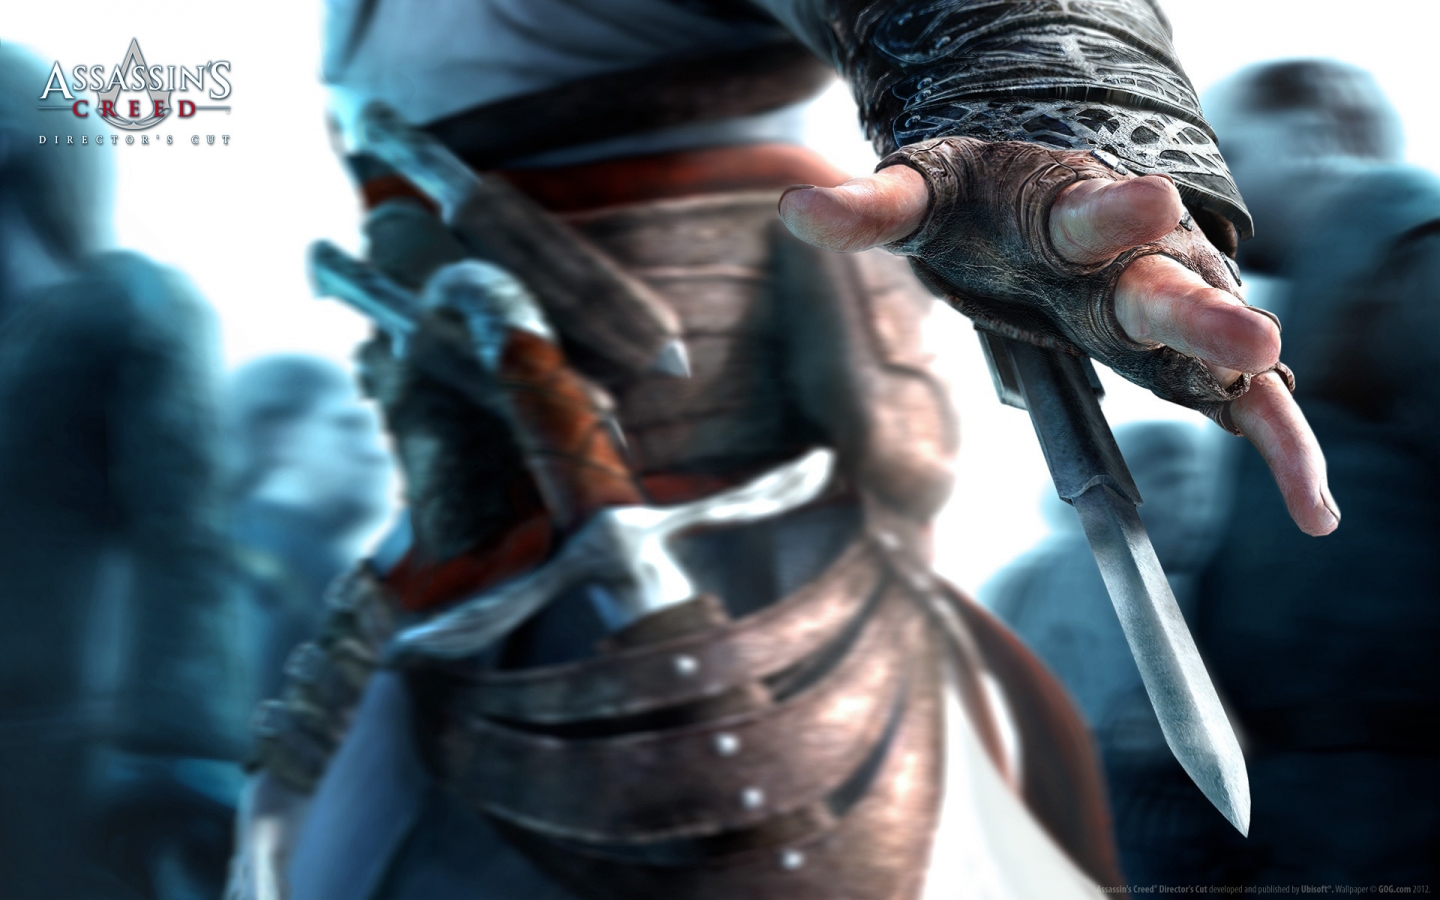 Assassins Creed Hidden Blade for 1440 x 900 widescreen resolution